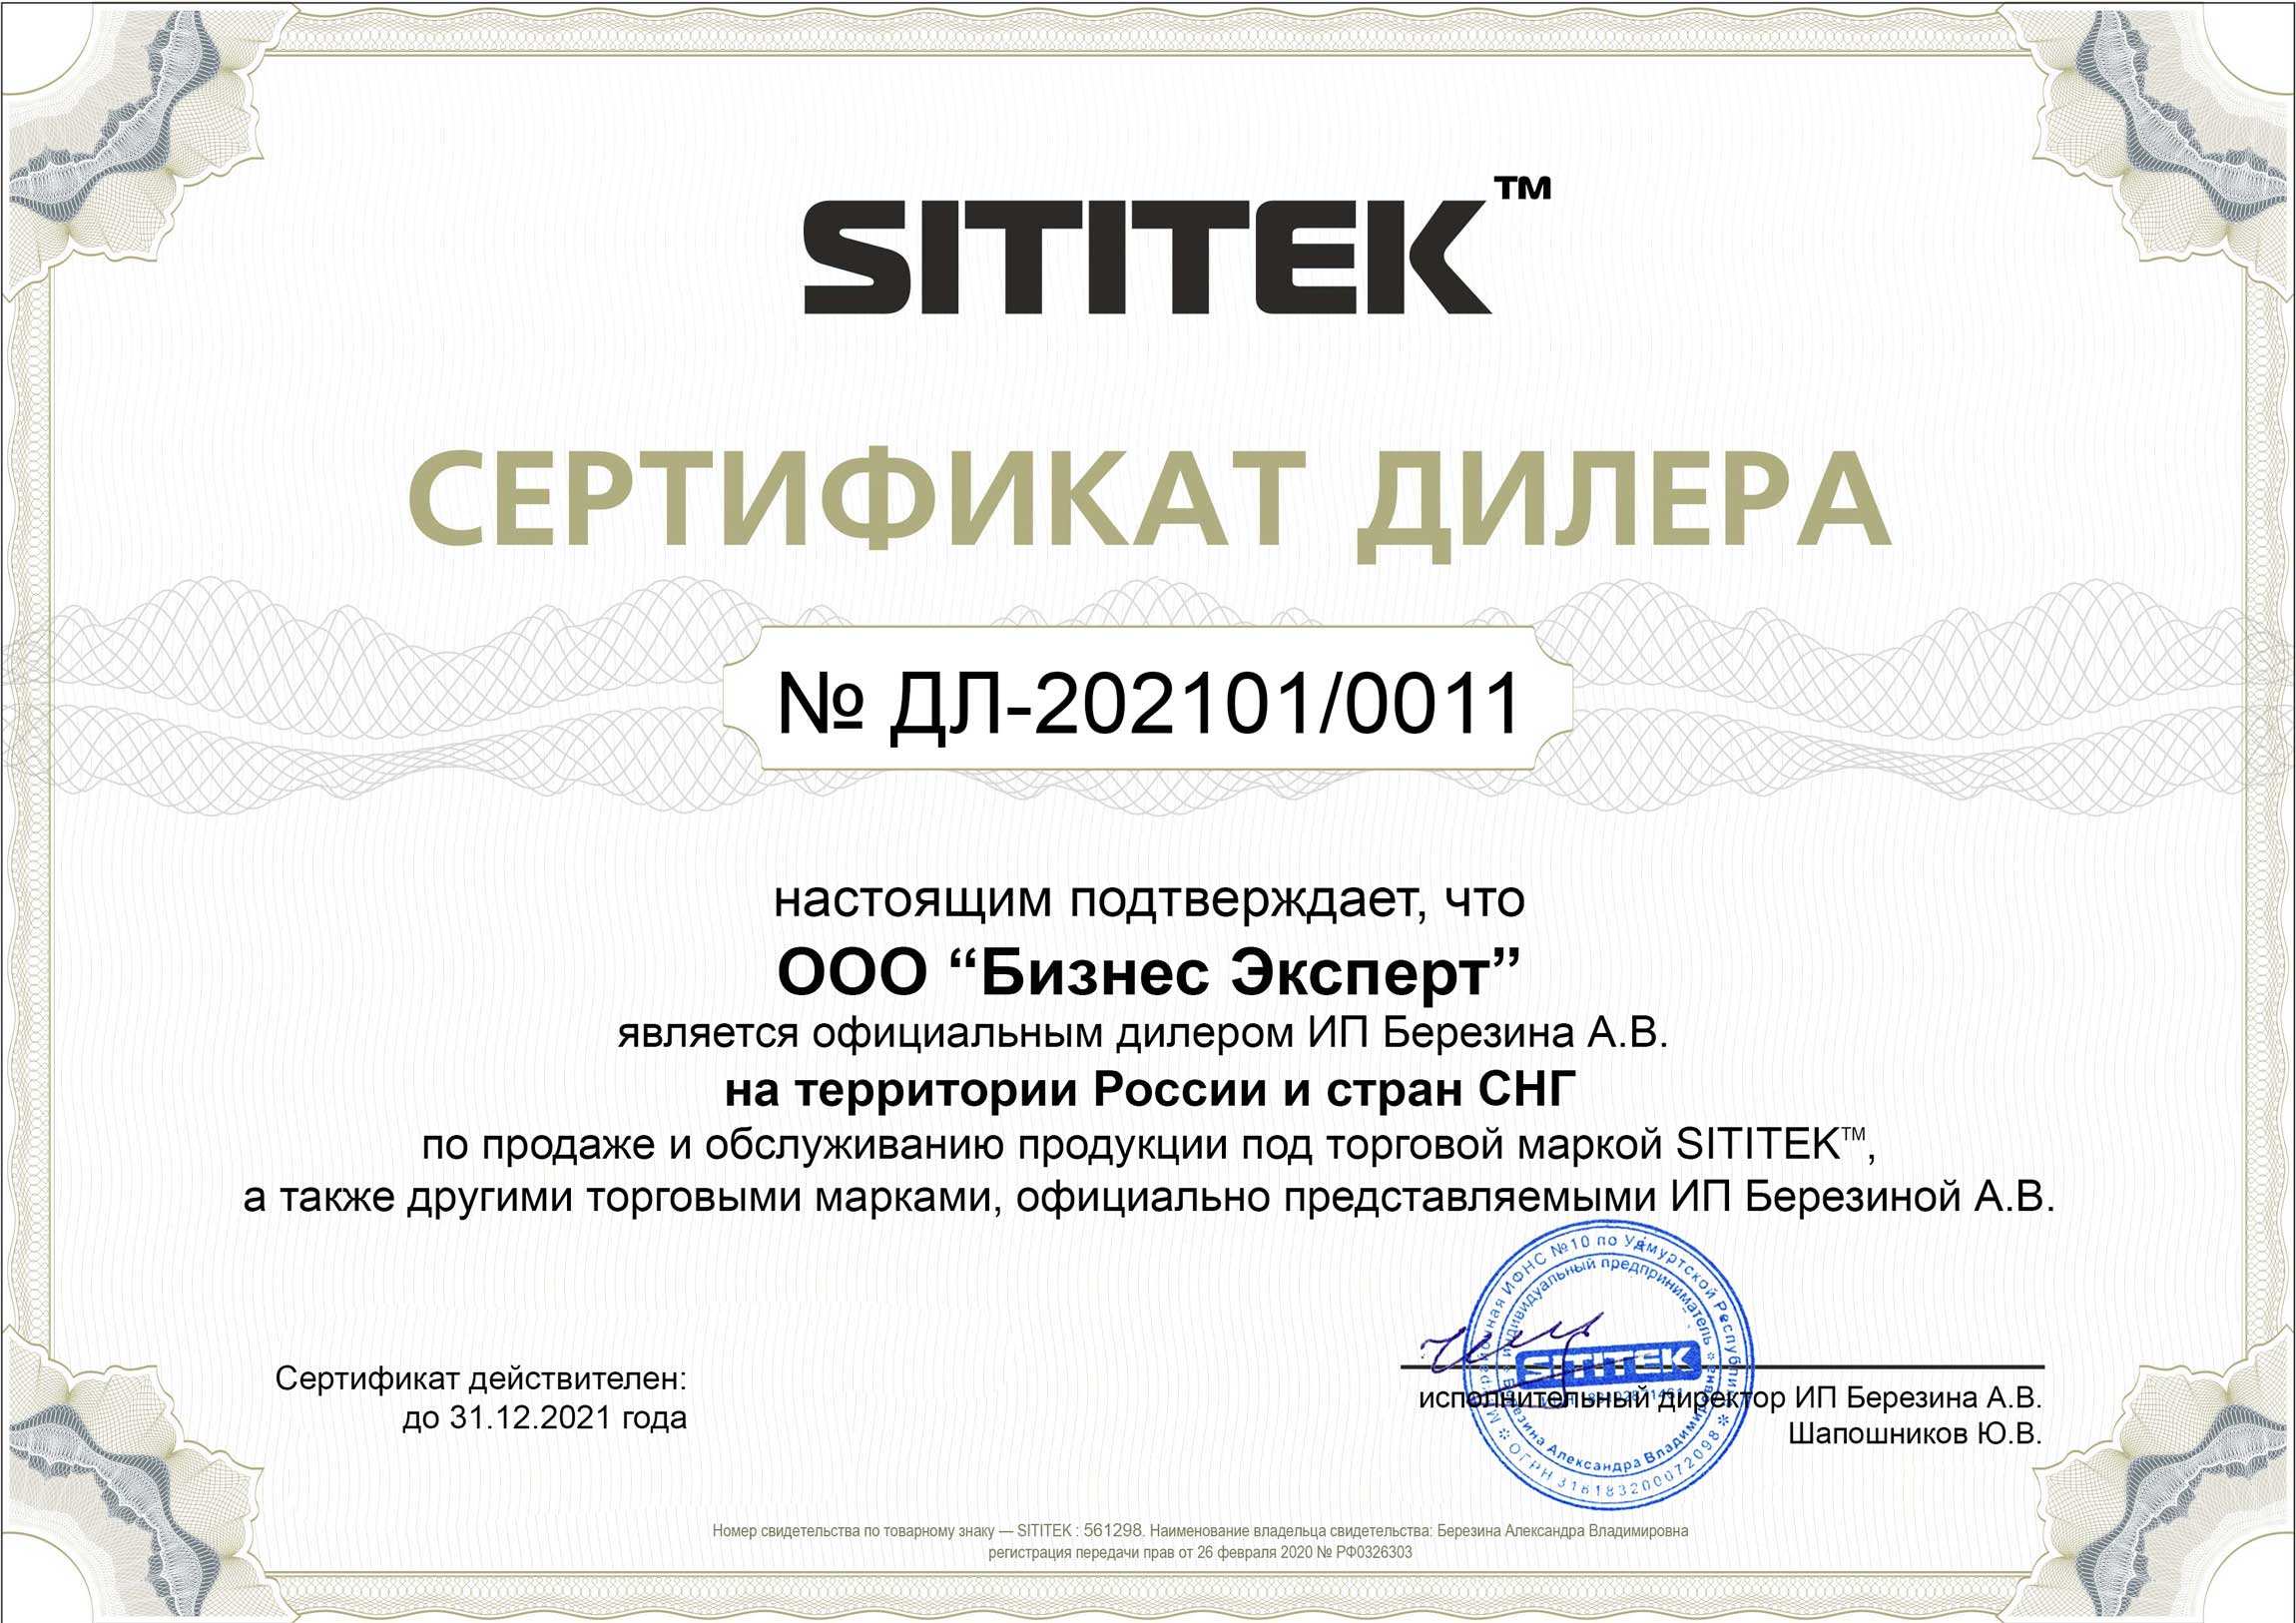 Наш магазин является официальным дилером компании SITITEK и имеет соответствующий сертификат (нажмите для увеличения)